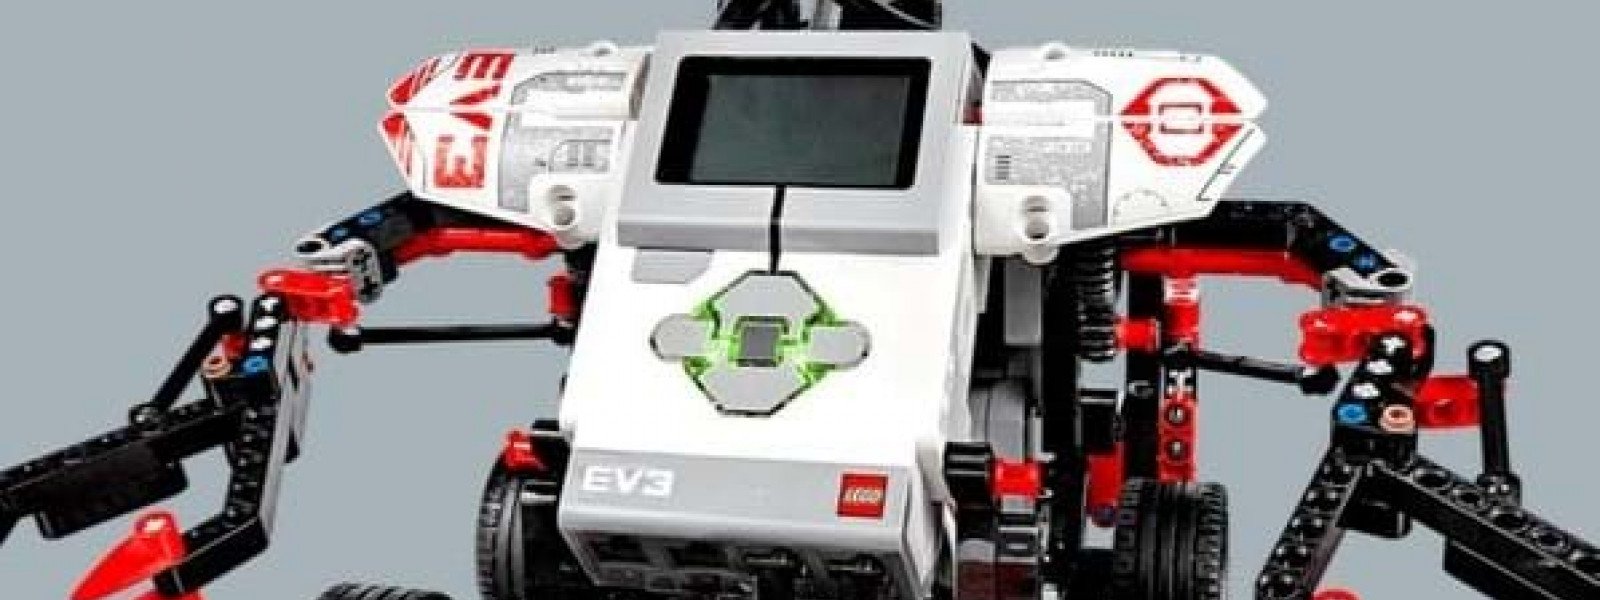 Atelier familial : Montage de Robot Lego Mindstorm EV3